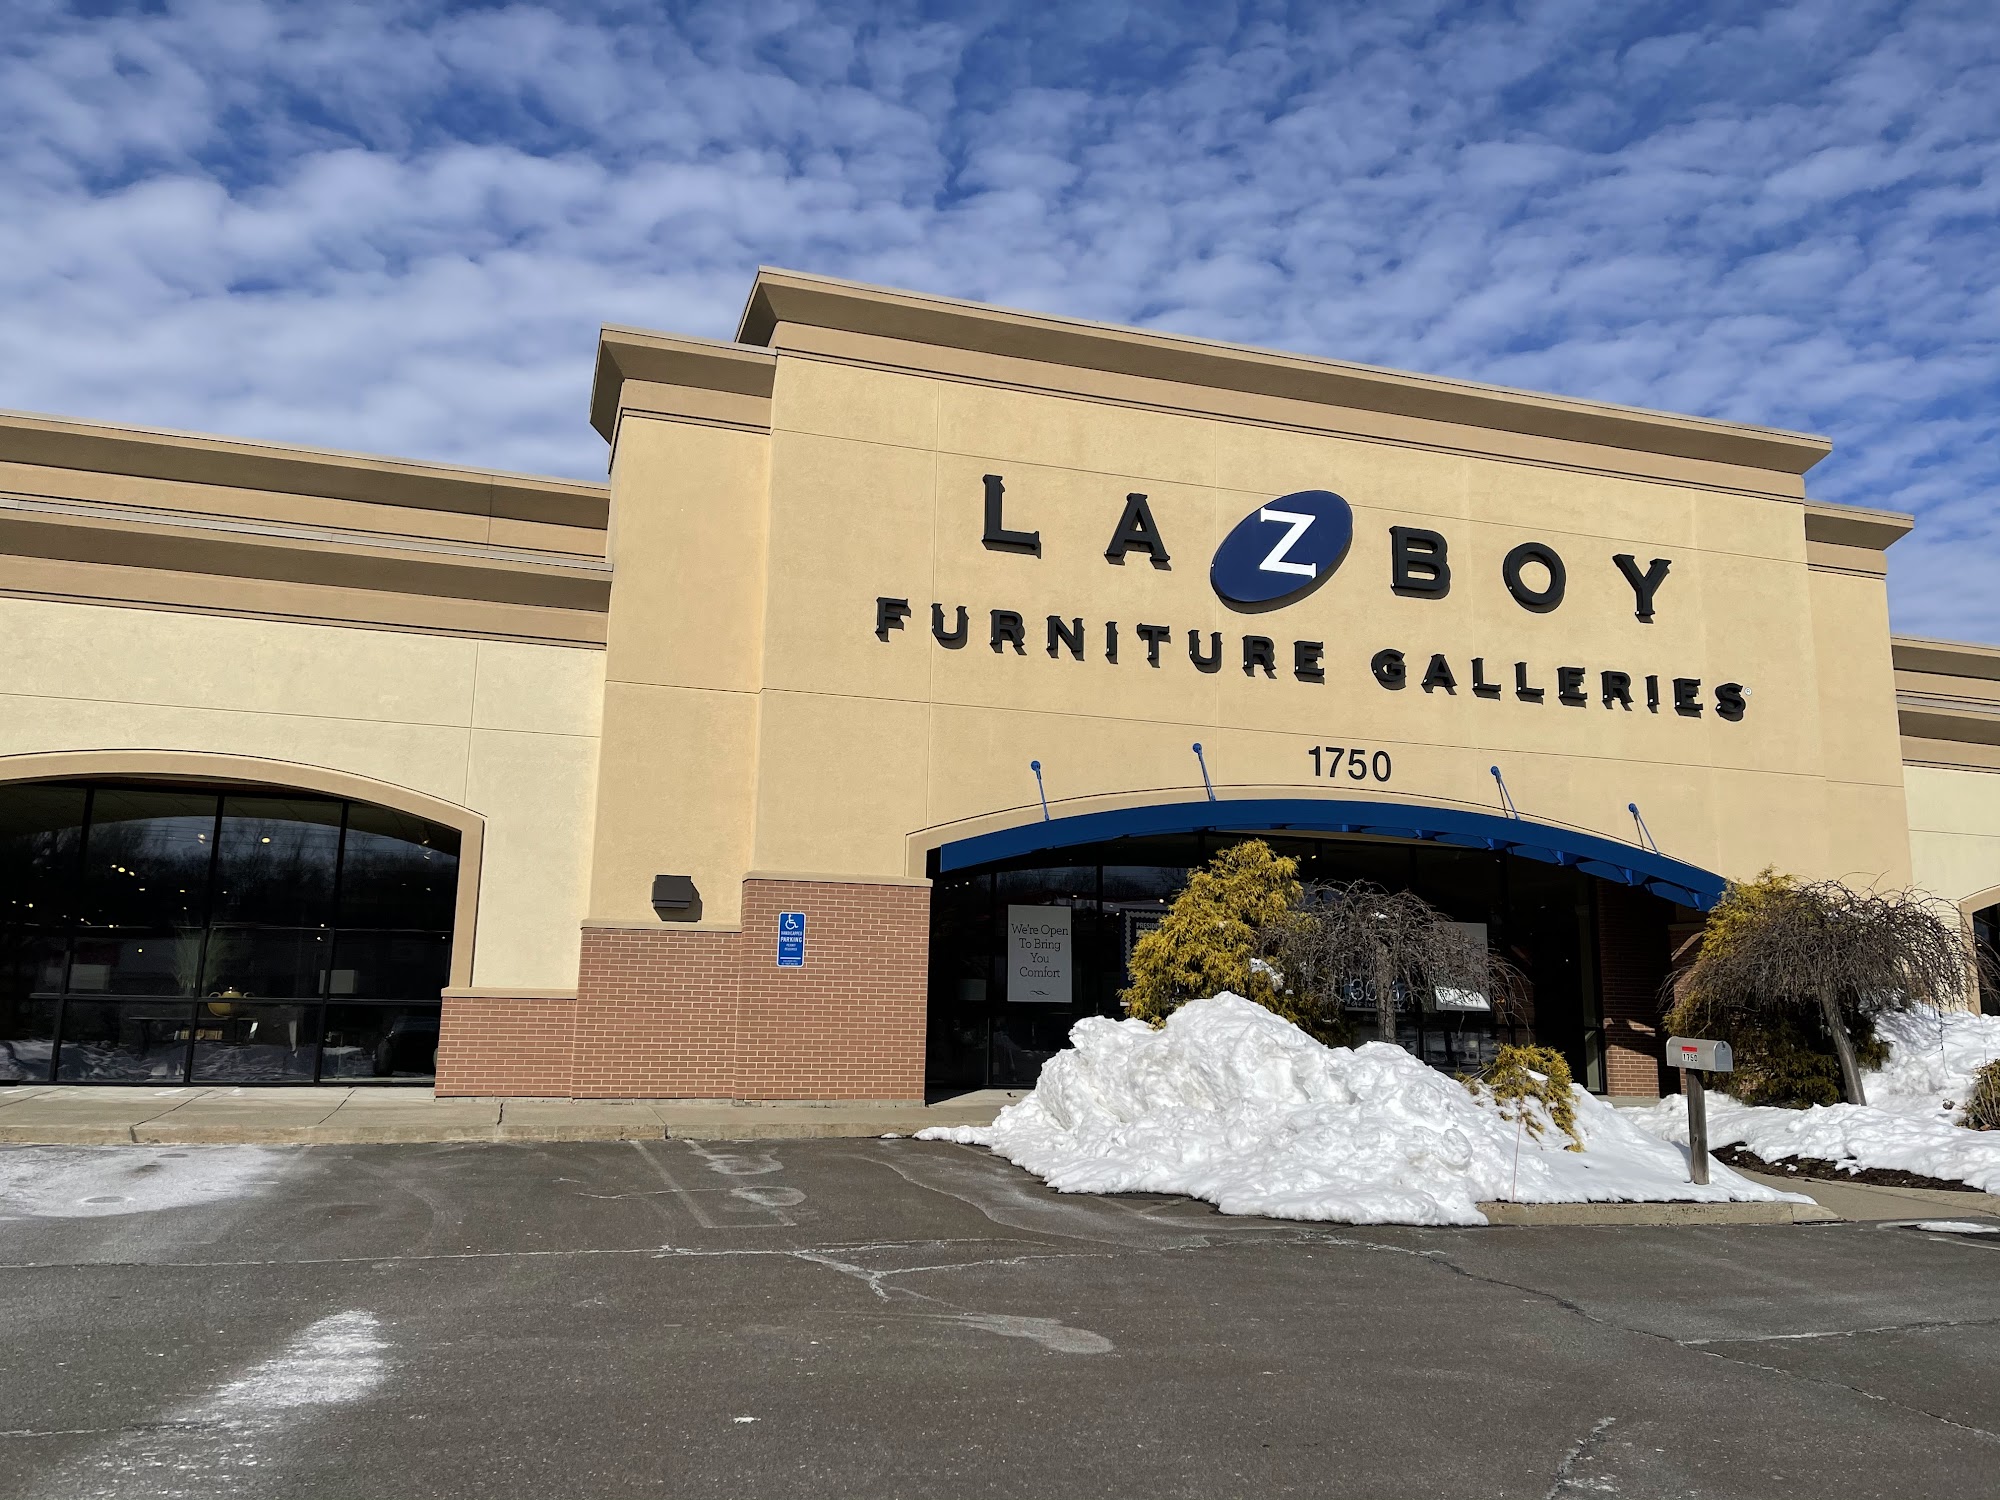 La-Z-Boy Furniture Galleries